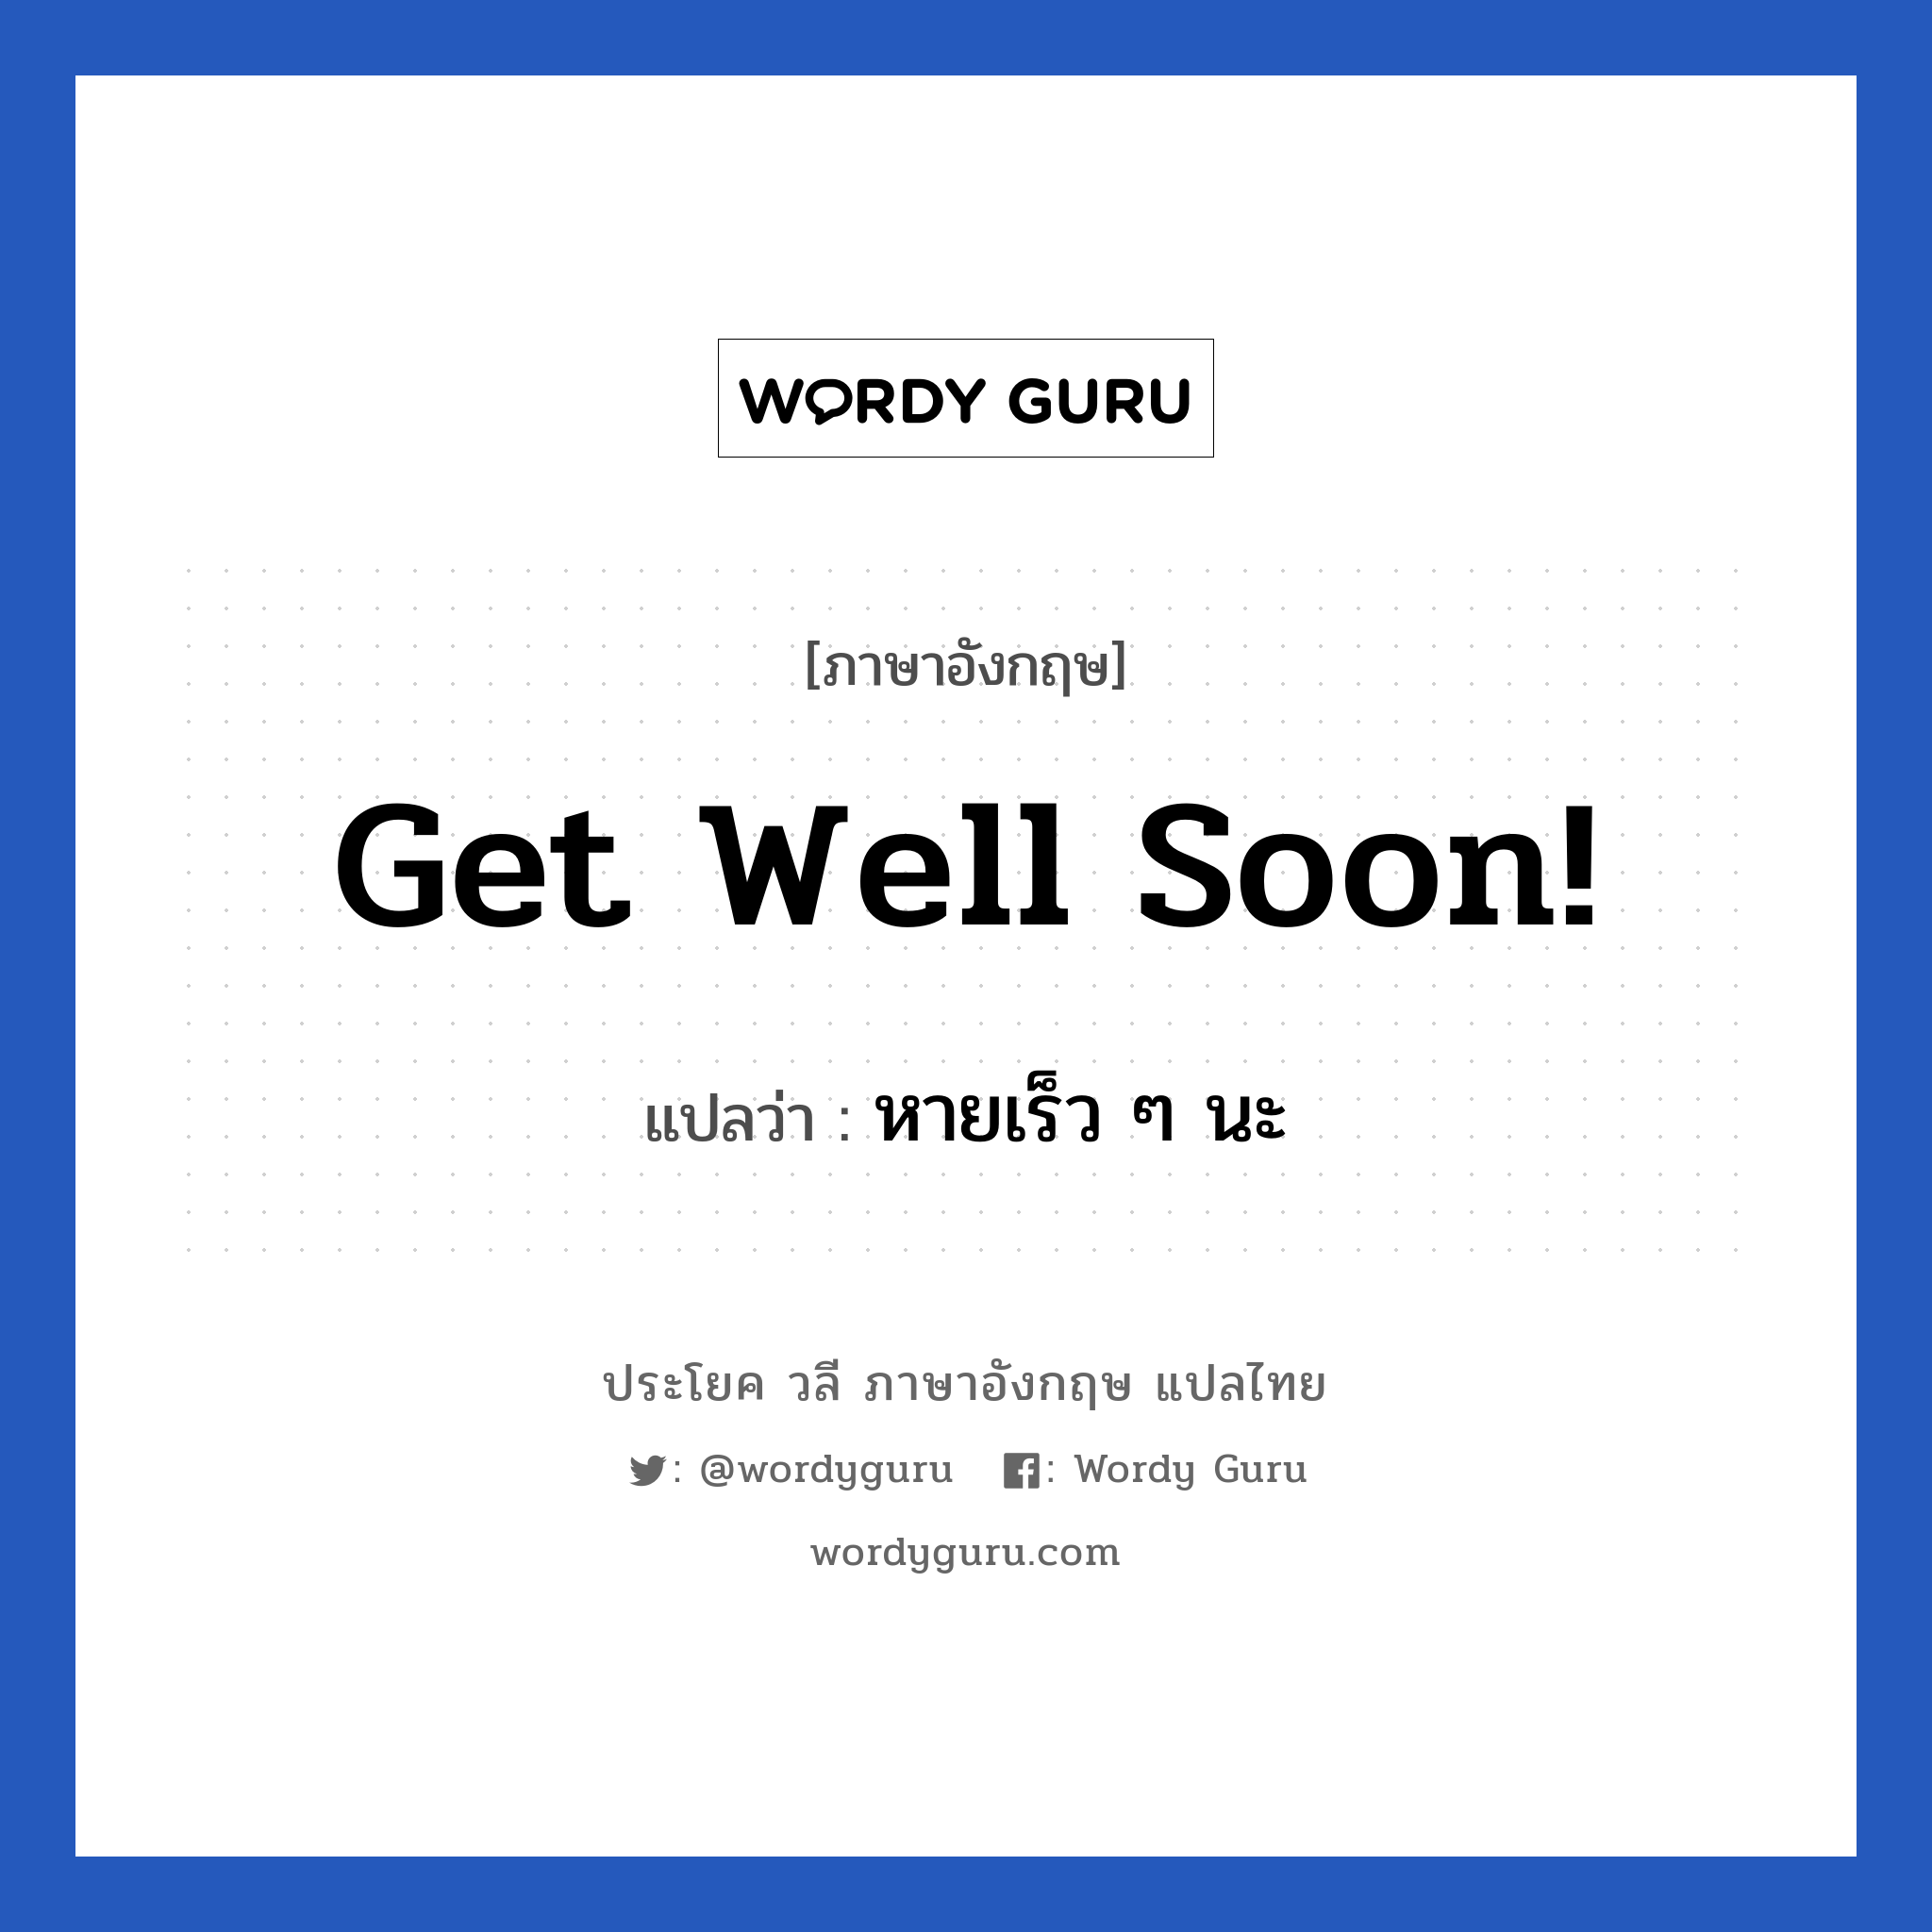 Get well soon! แปลว่า?, วลีภาษาอังกฤษ Get well soon! แปลว่า หายเร็ว ๆ นะ หมวด การบอกลา